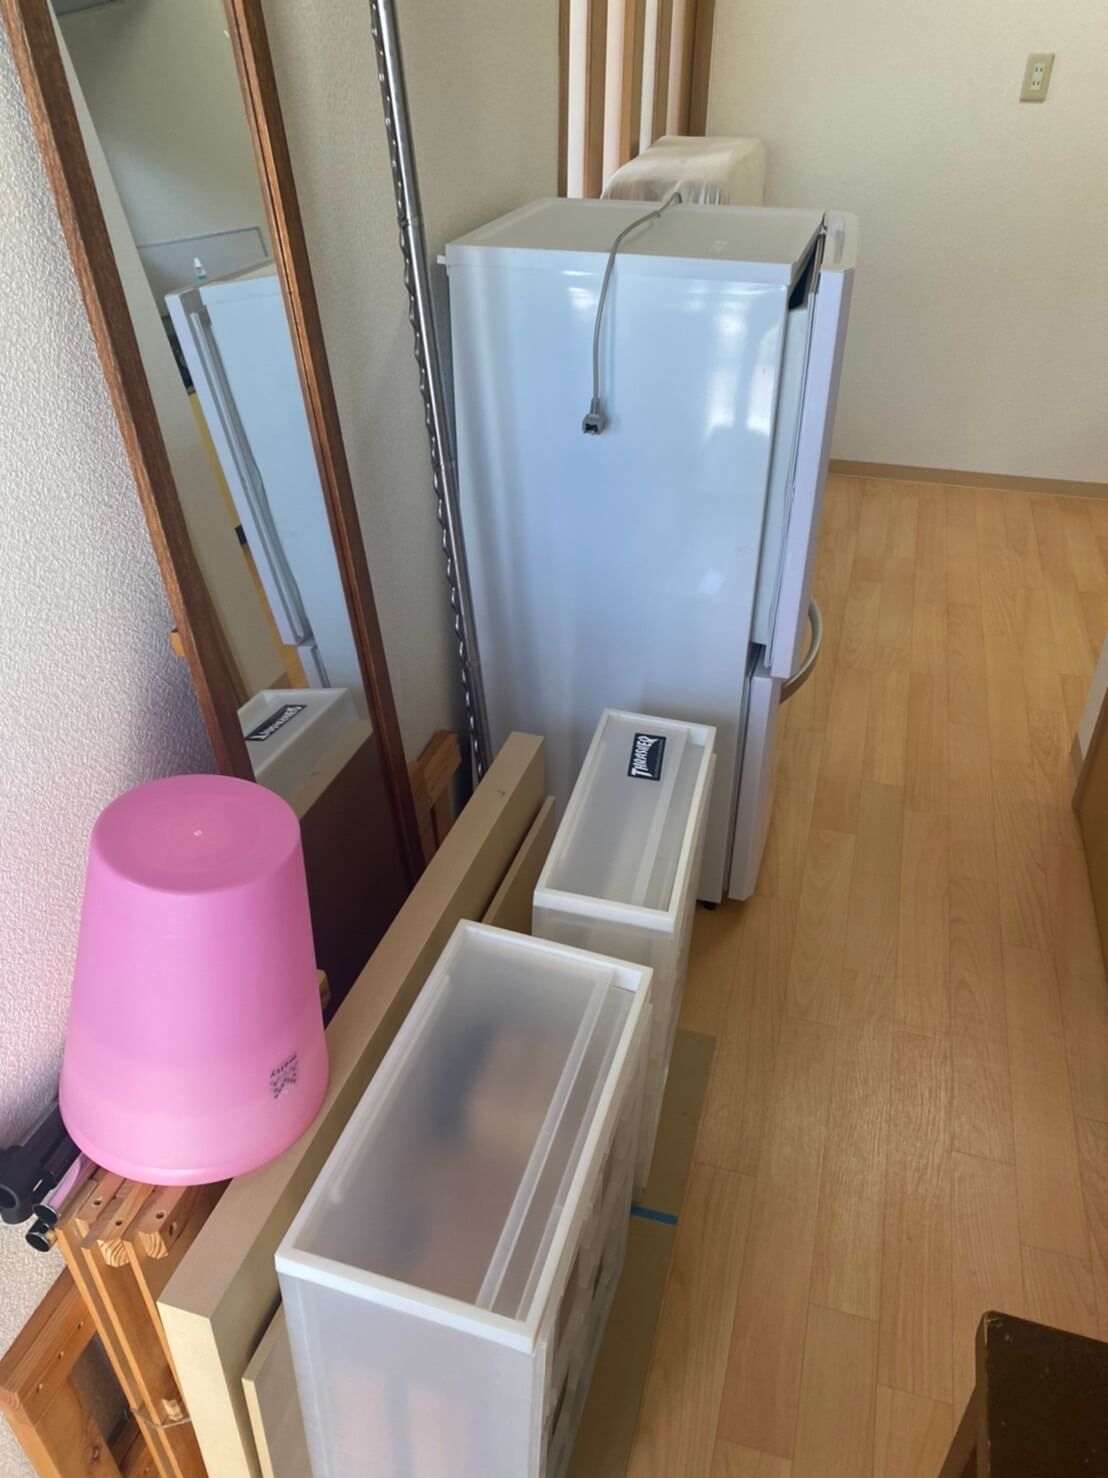 鏡、冷蔵庫、机、ゴミ箱の回収前の状態